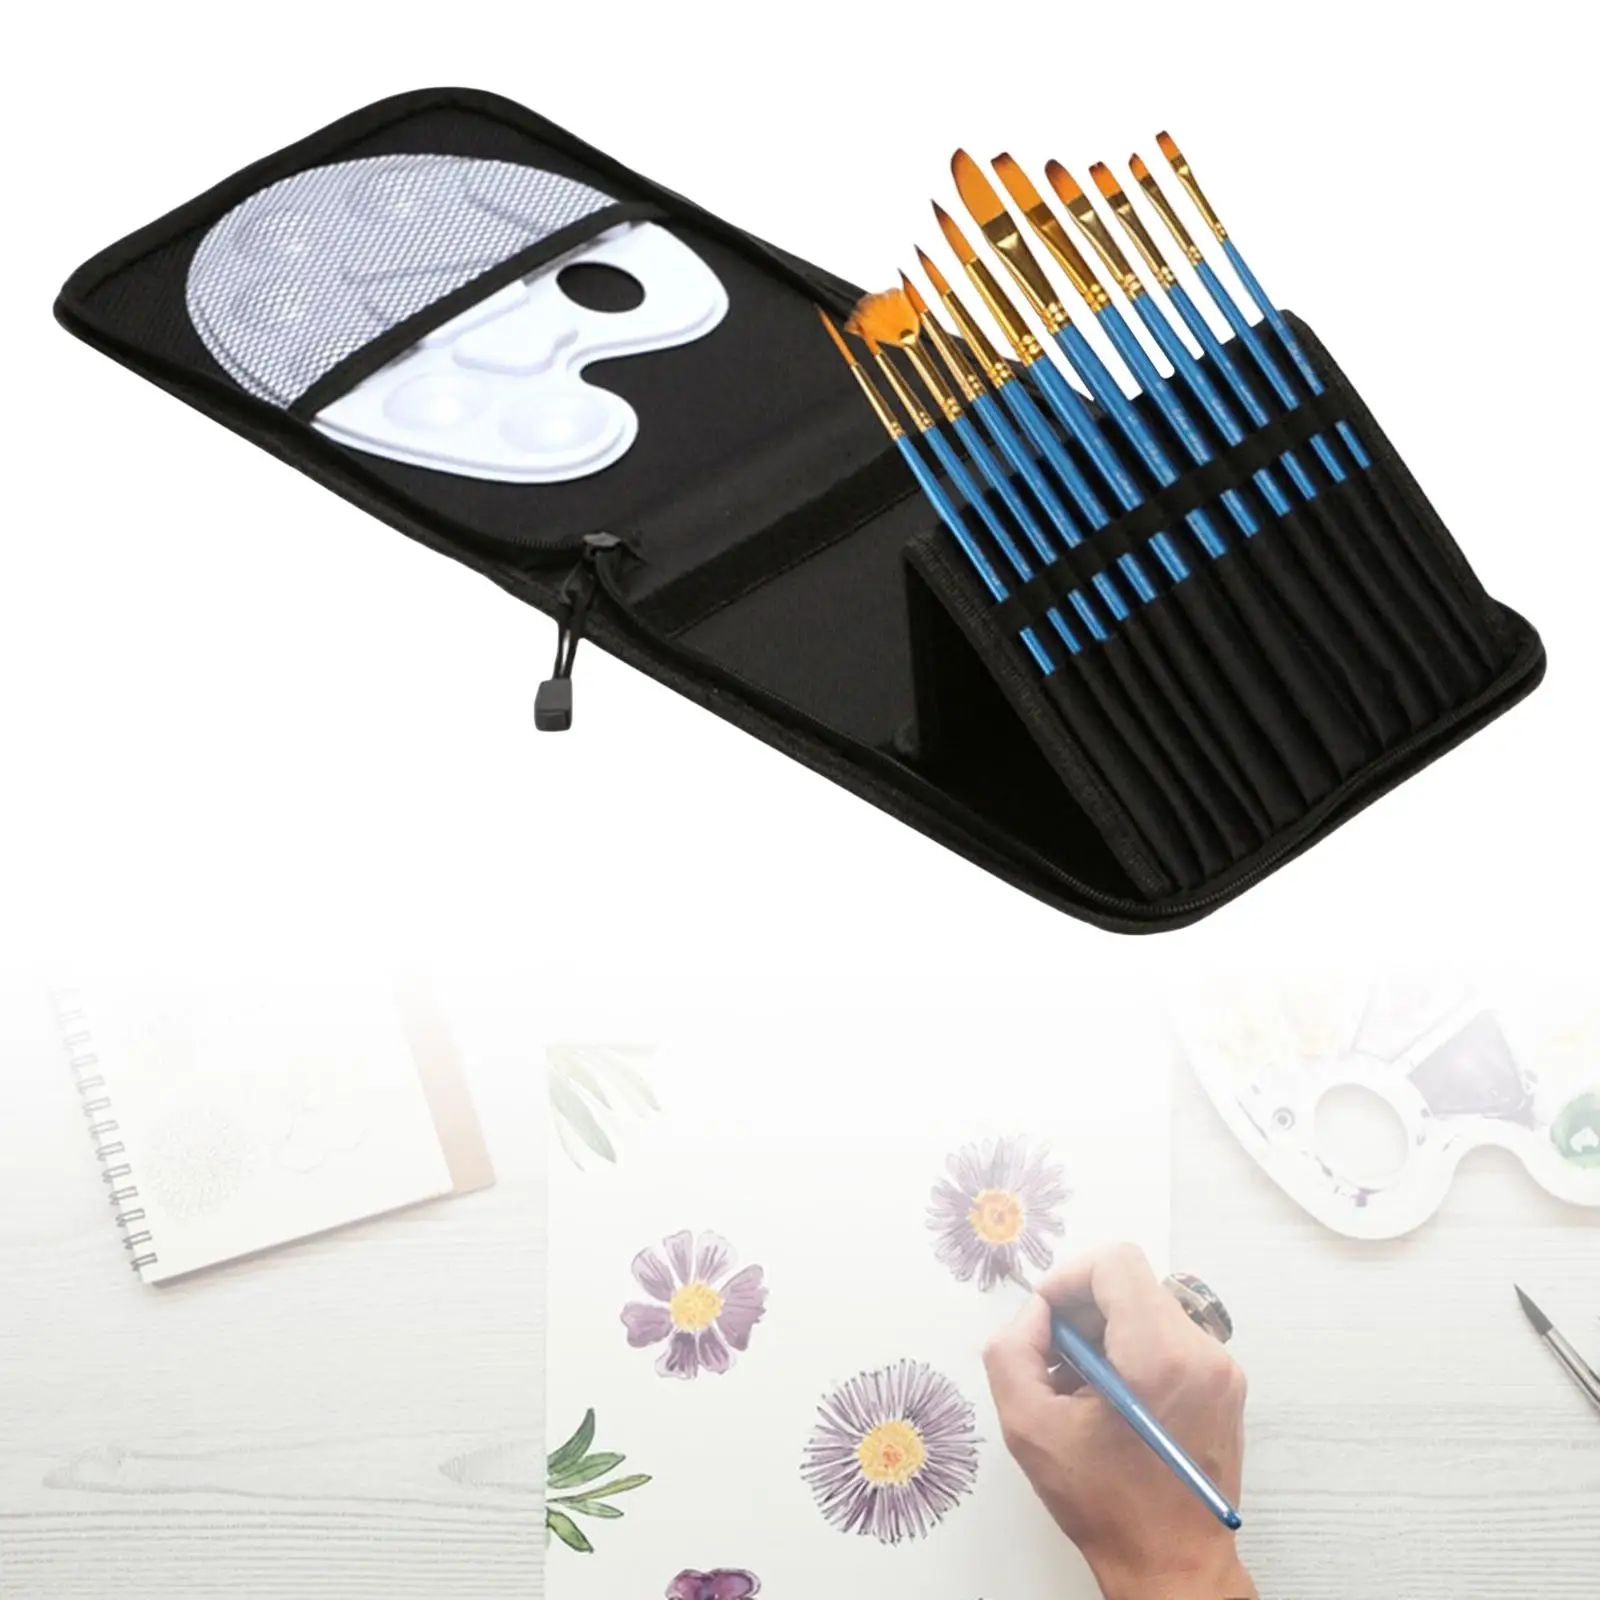 12Pcs Paint Brush Set with Storage Case Wood Handle Gouache Painting Brushes